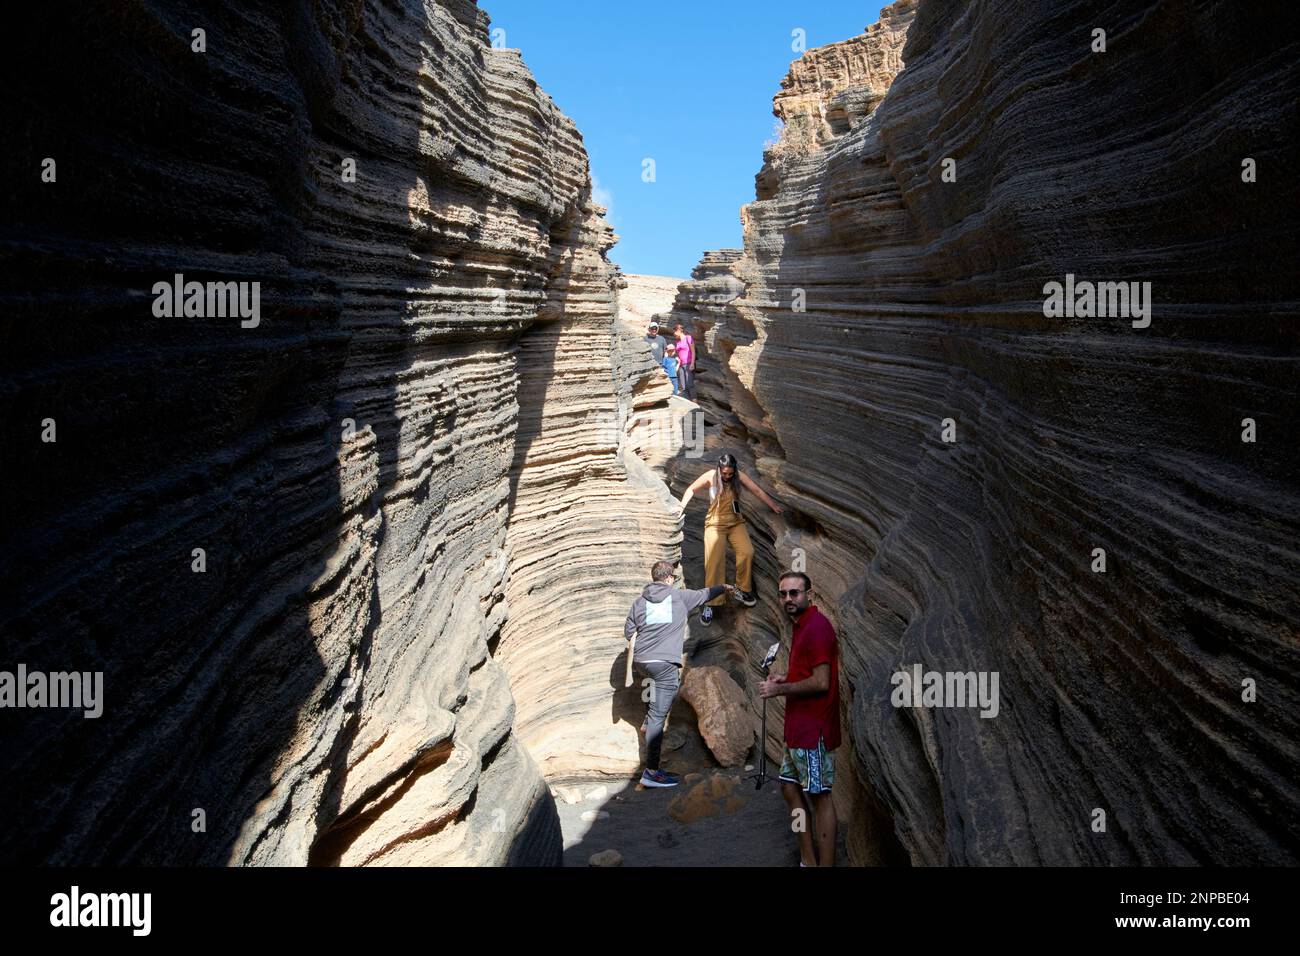 Touristen, die in Schichten von Ladera del volcan Las Grietas Lanzarote, Kanarische Inseln, Spanische vulkanische Felsformationen durch Erosion spazieren gehen Stockfoto